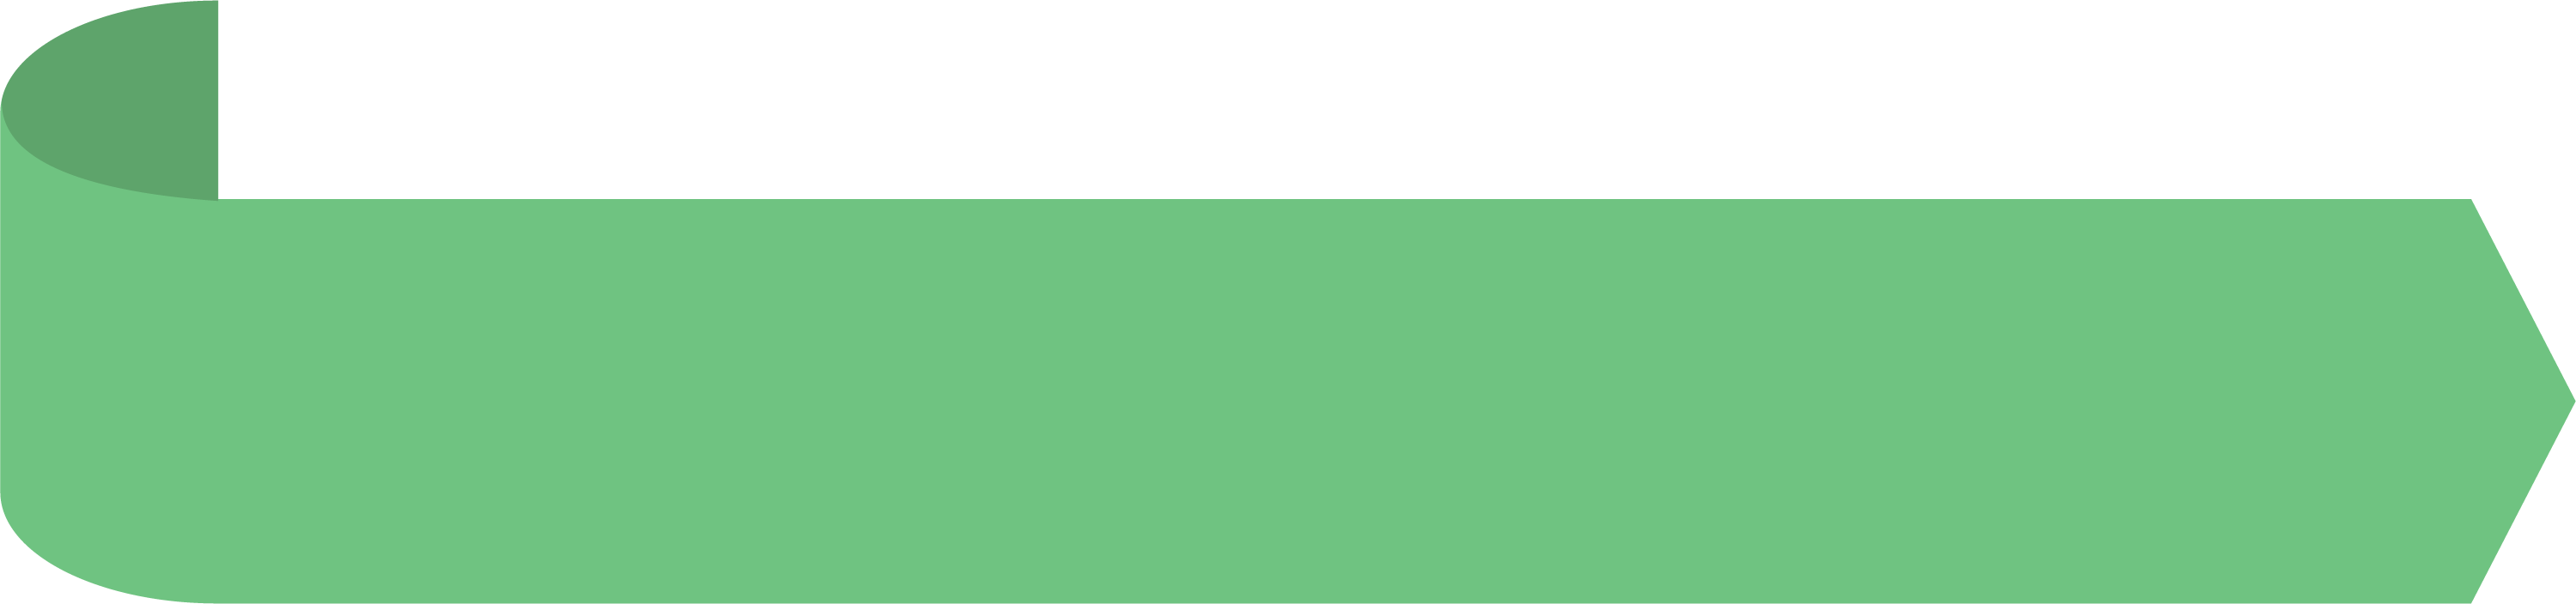 Зеленая прямая линия. Зеленая полоска. Салатовая полоска. Полоска зеленая на прозрачном фоне. Полоса зеленого цвета.